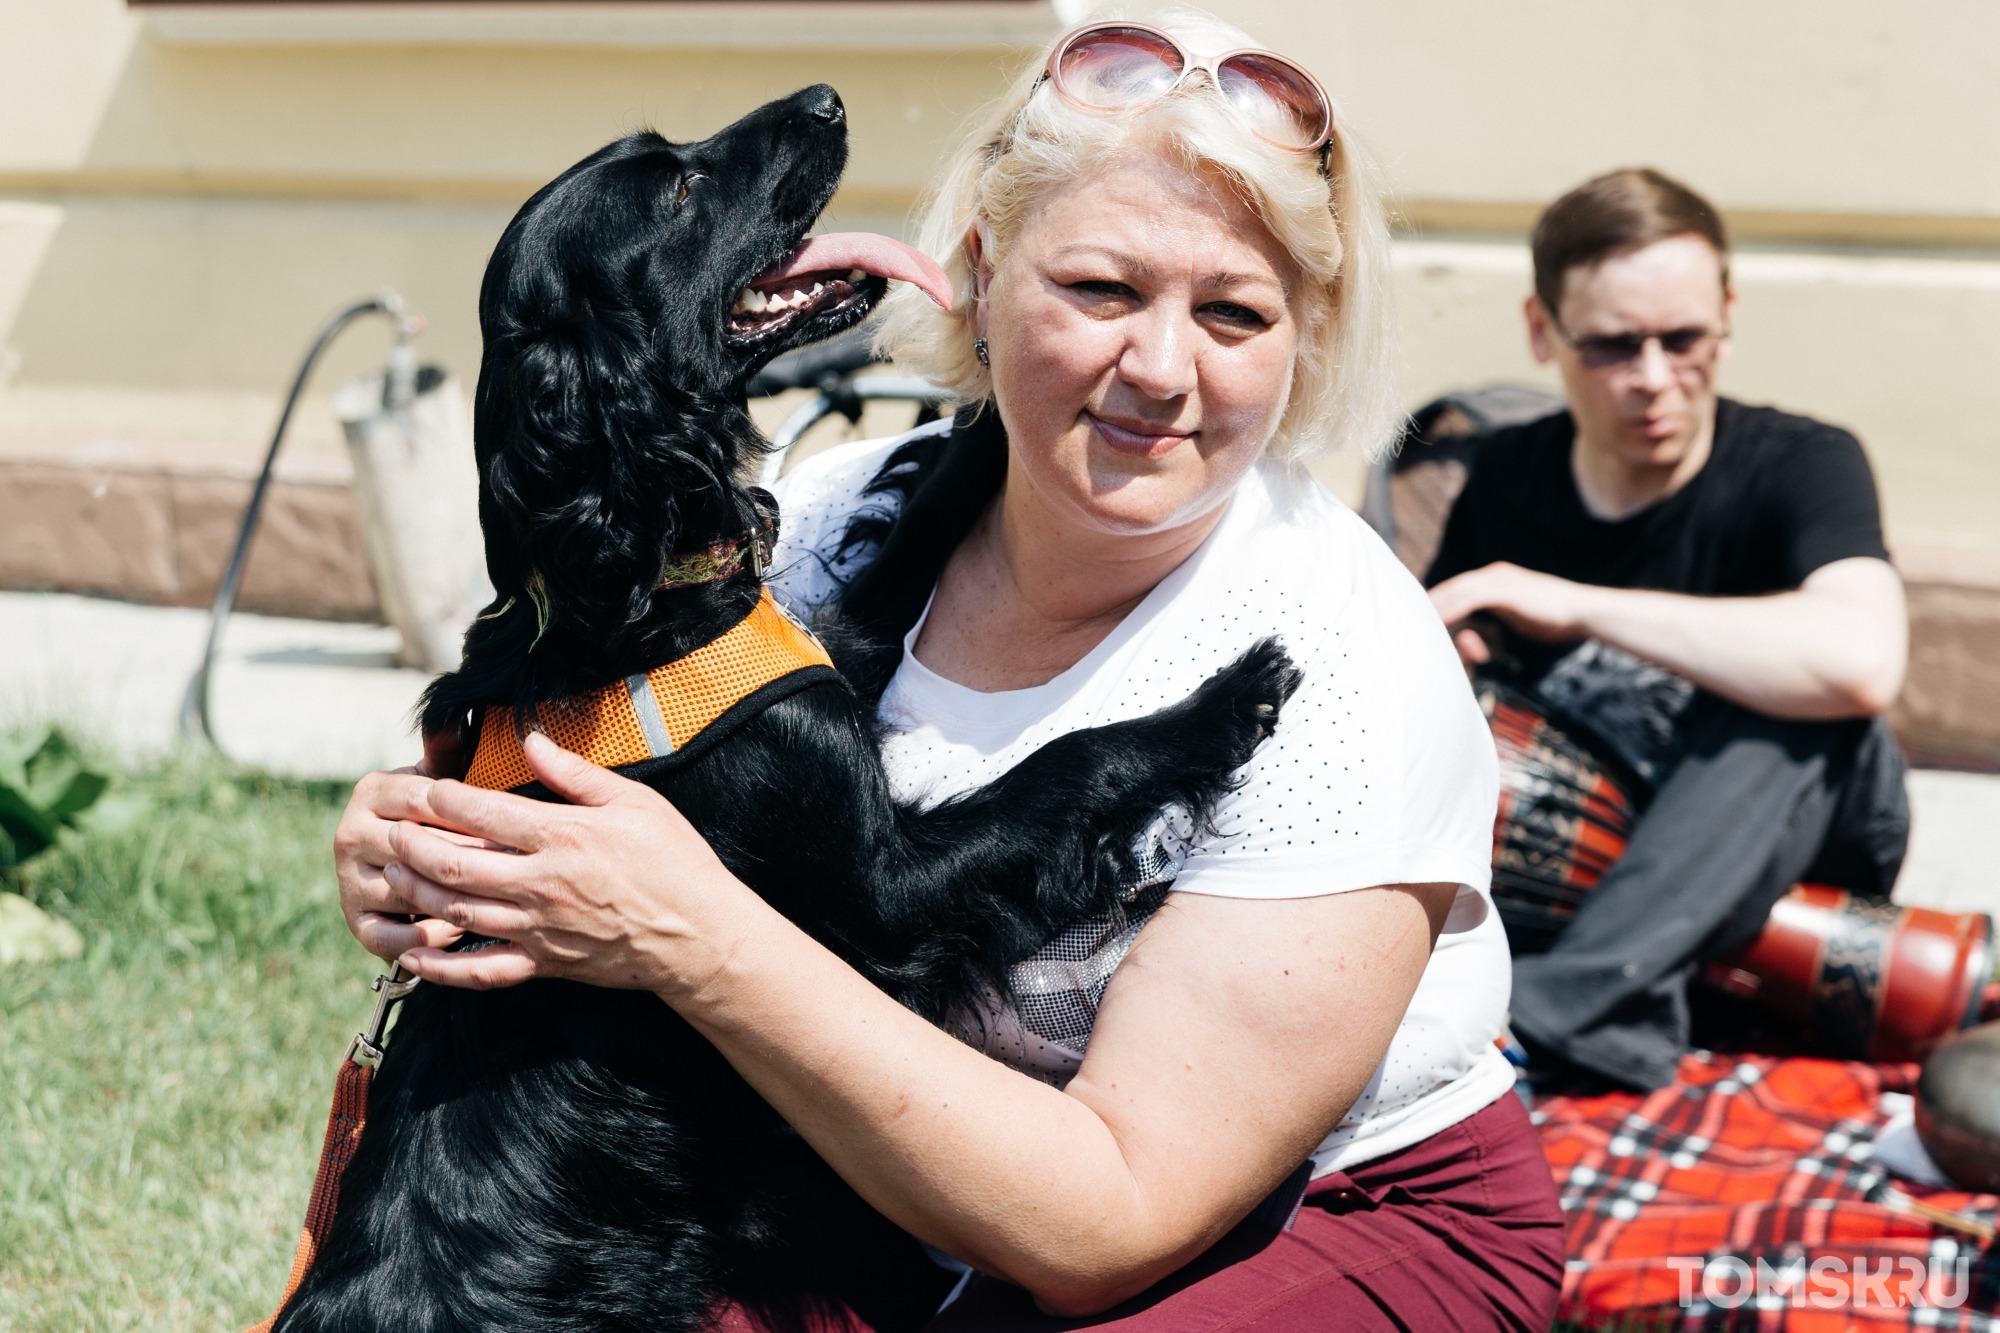 Фоторепортаж: благотворительная ярмарка в помощь бездомным животным прошла в Томске